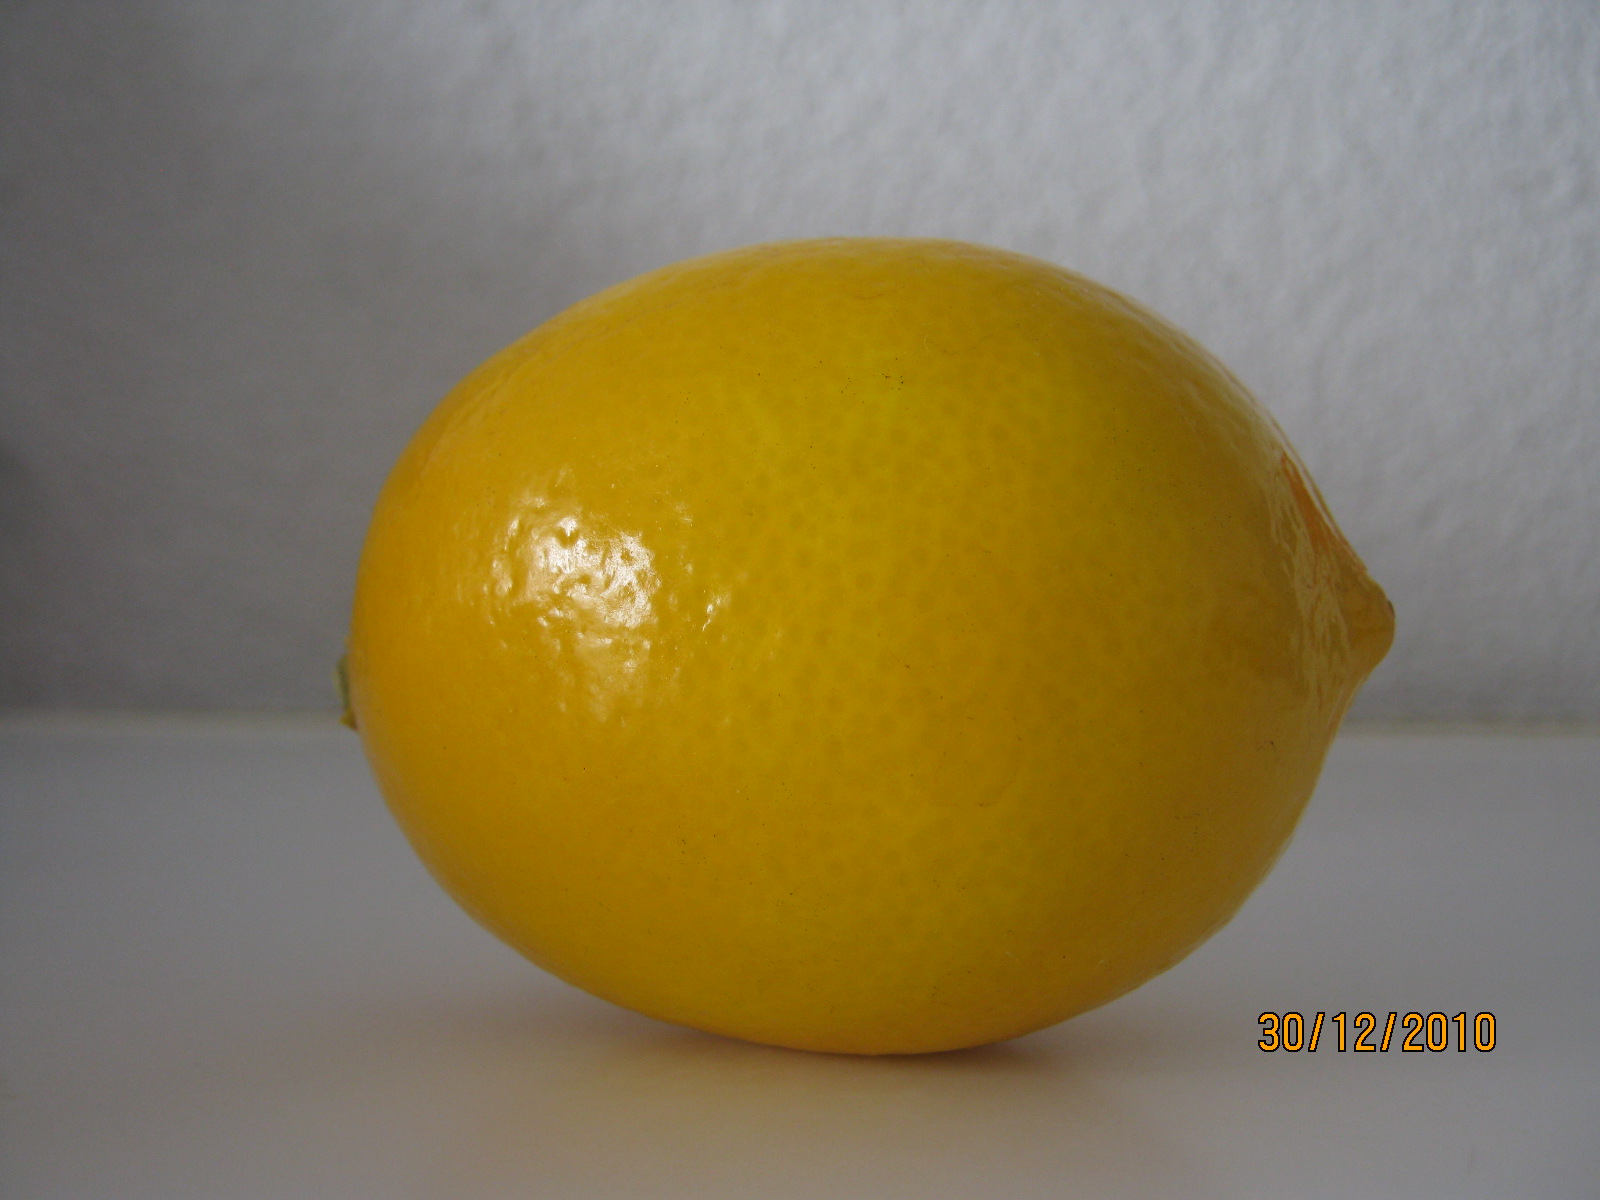 Lemon is healthy